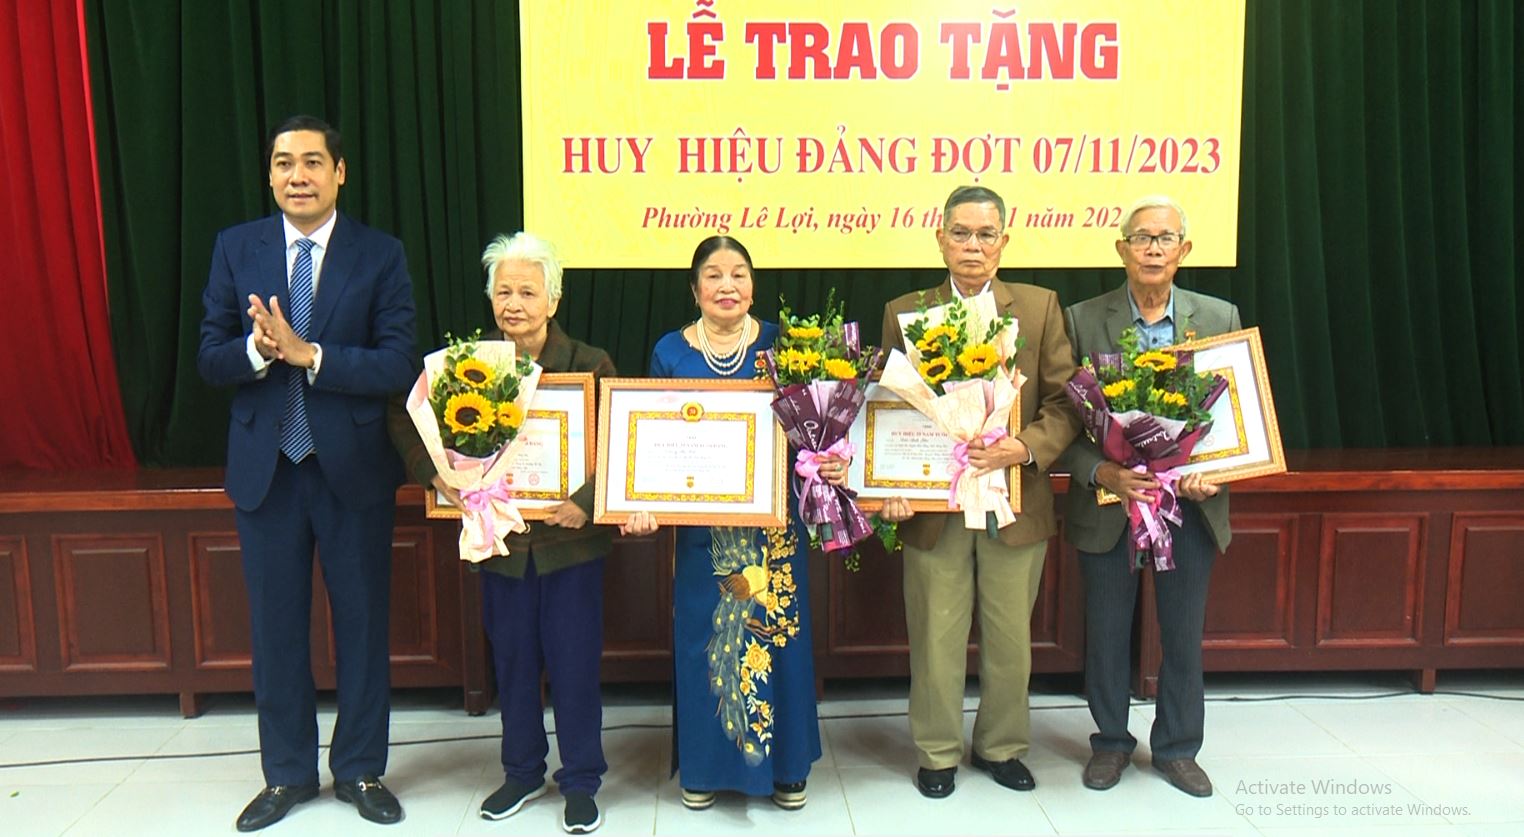 Đảng bộ phường Lê Lợi  tổ chức trao tặng Huy hiệu Đảng đợt 07/11/2023